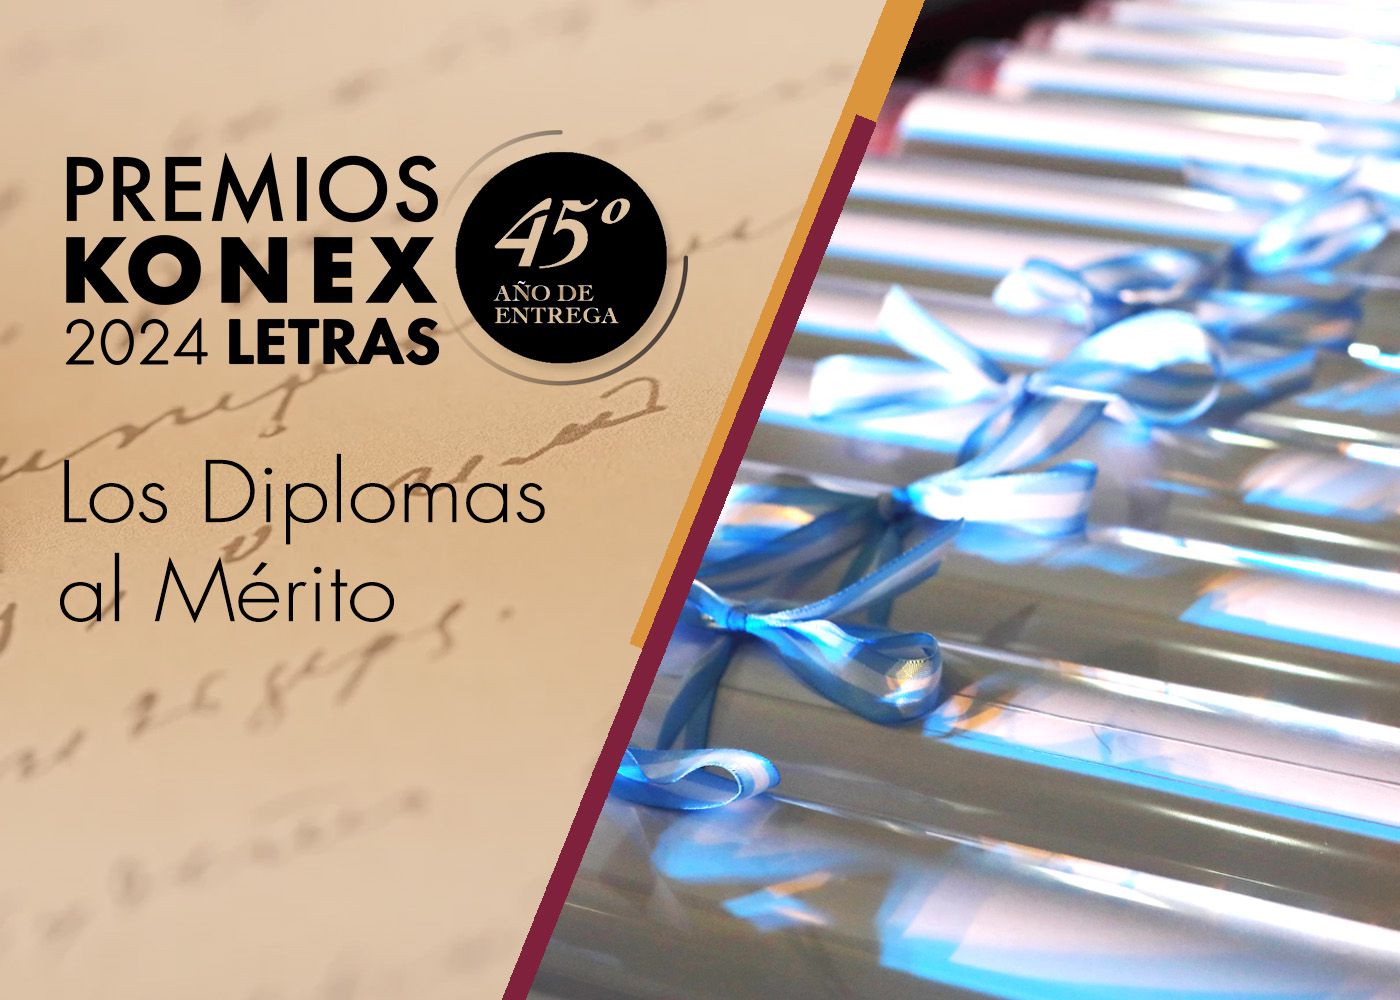 Premios Konex 2024: Letras. Ya se conocen los Diplomas al Mérito.